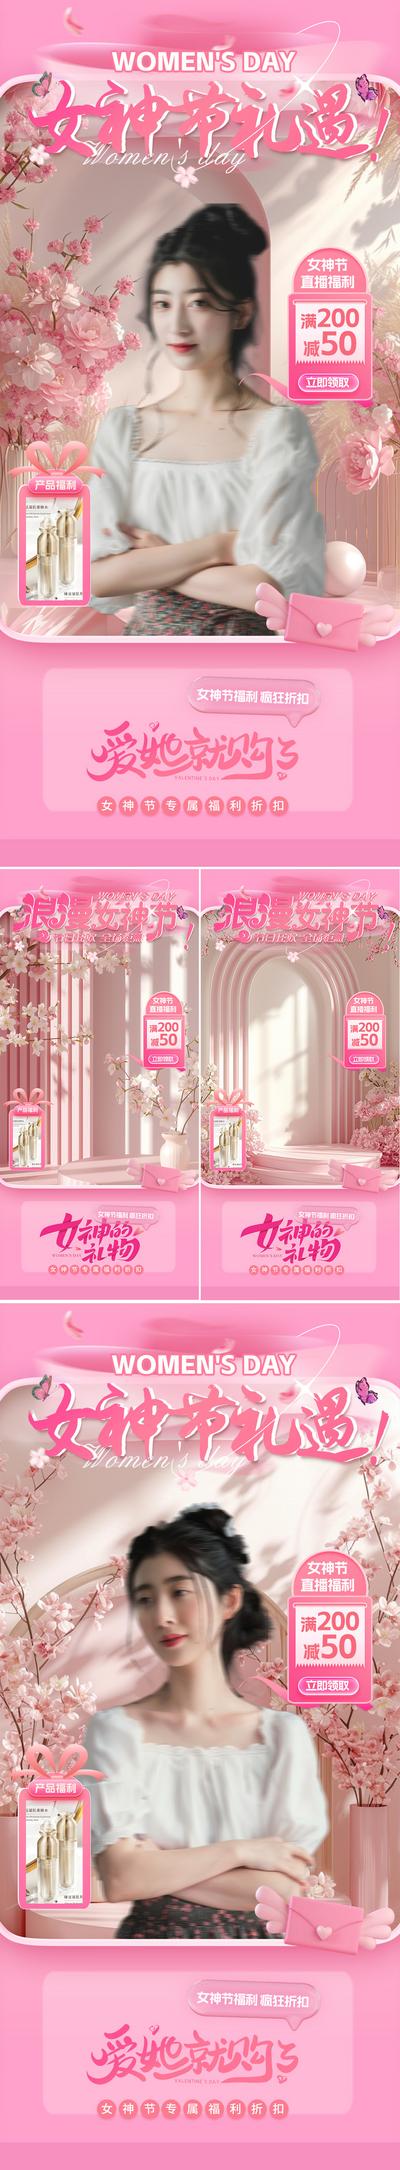 南门网 电商海报 直播间 贴片 妇女节 女神节 促销 活动 粉色 系列